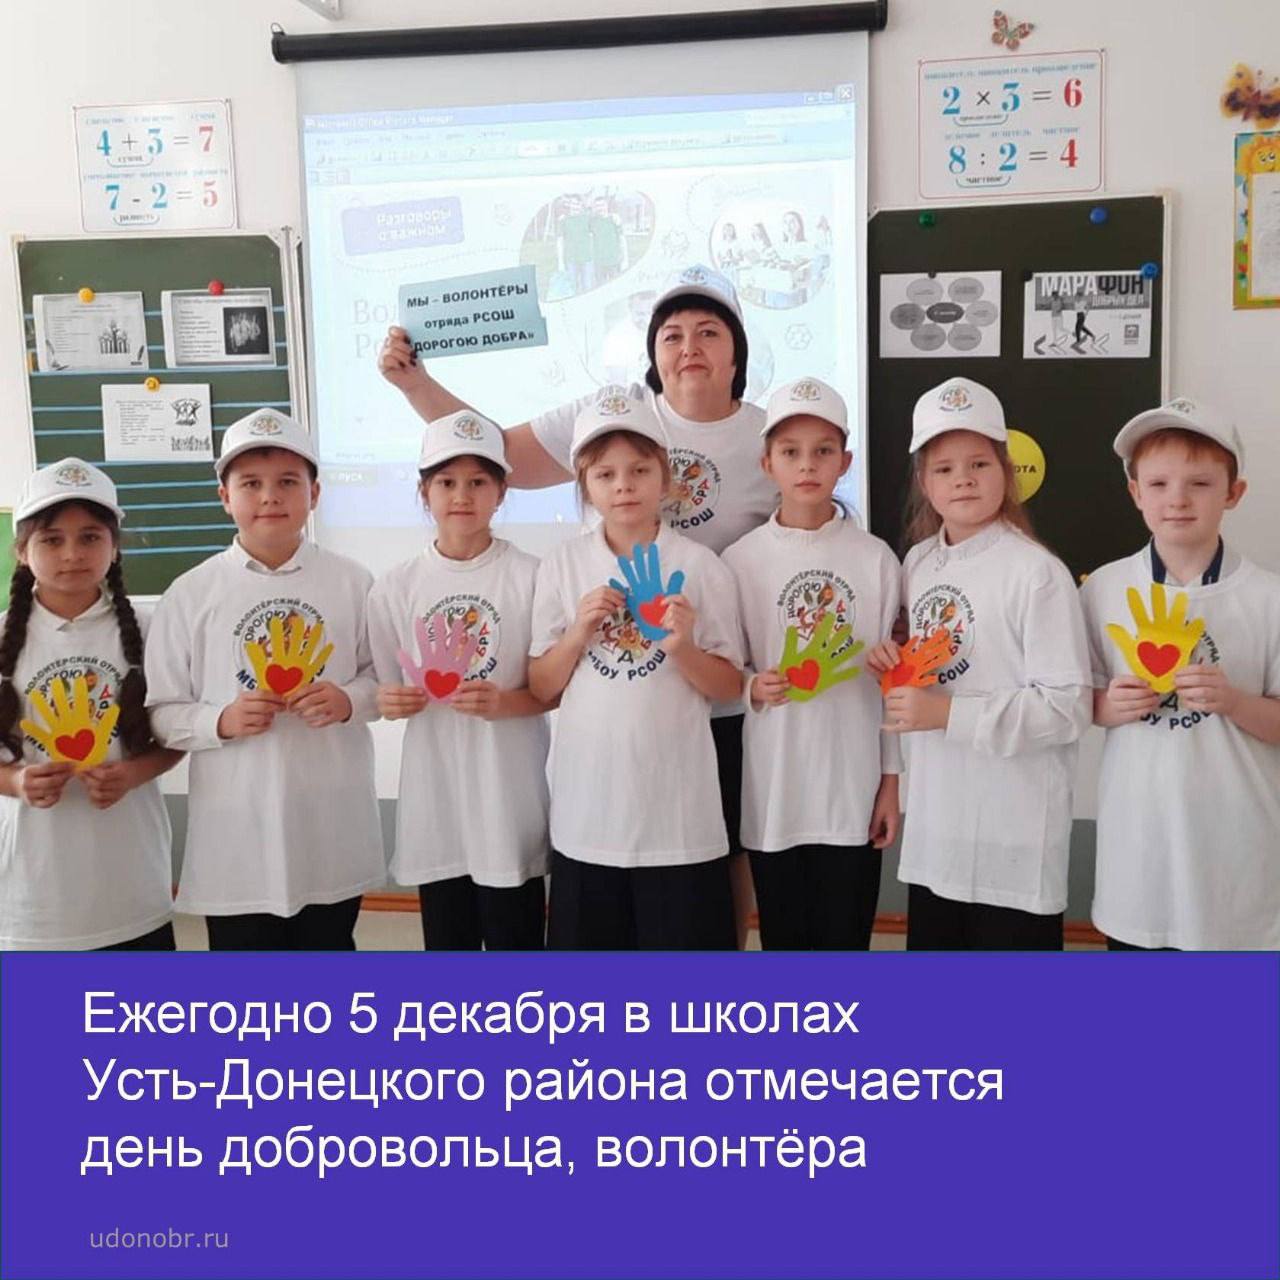 Ежегодно 5 декабря в школах Усть-Донецкого района отмечается День добровольца, волонтёра